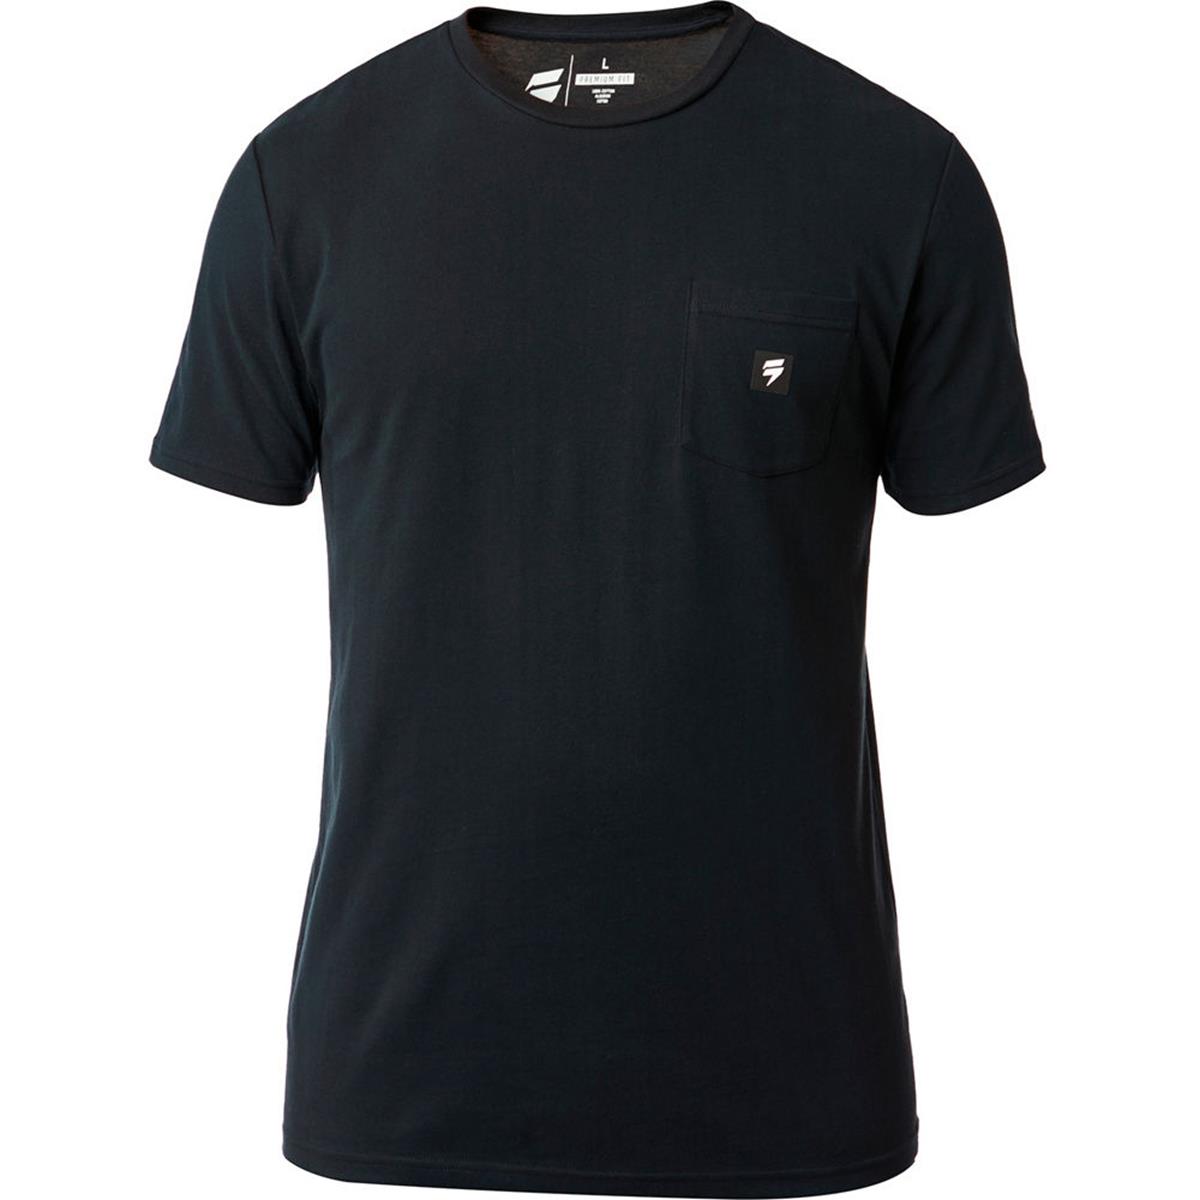 Shift T-Shirt 3LUE Label Basalt Black - Limited Edition